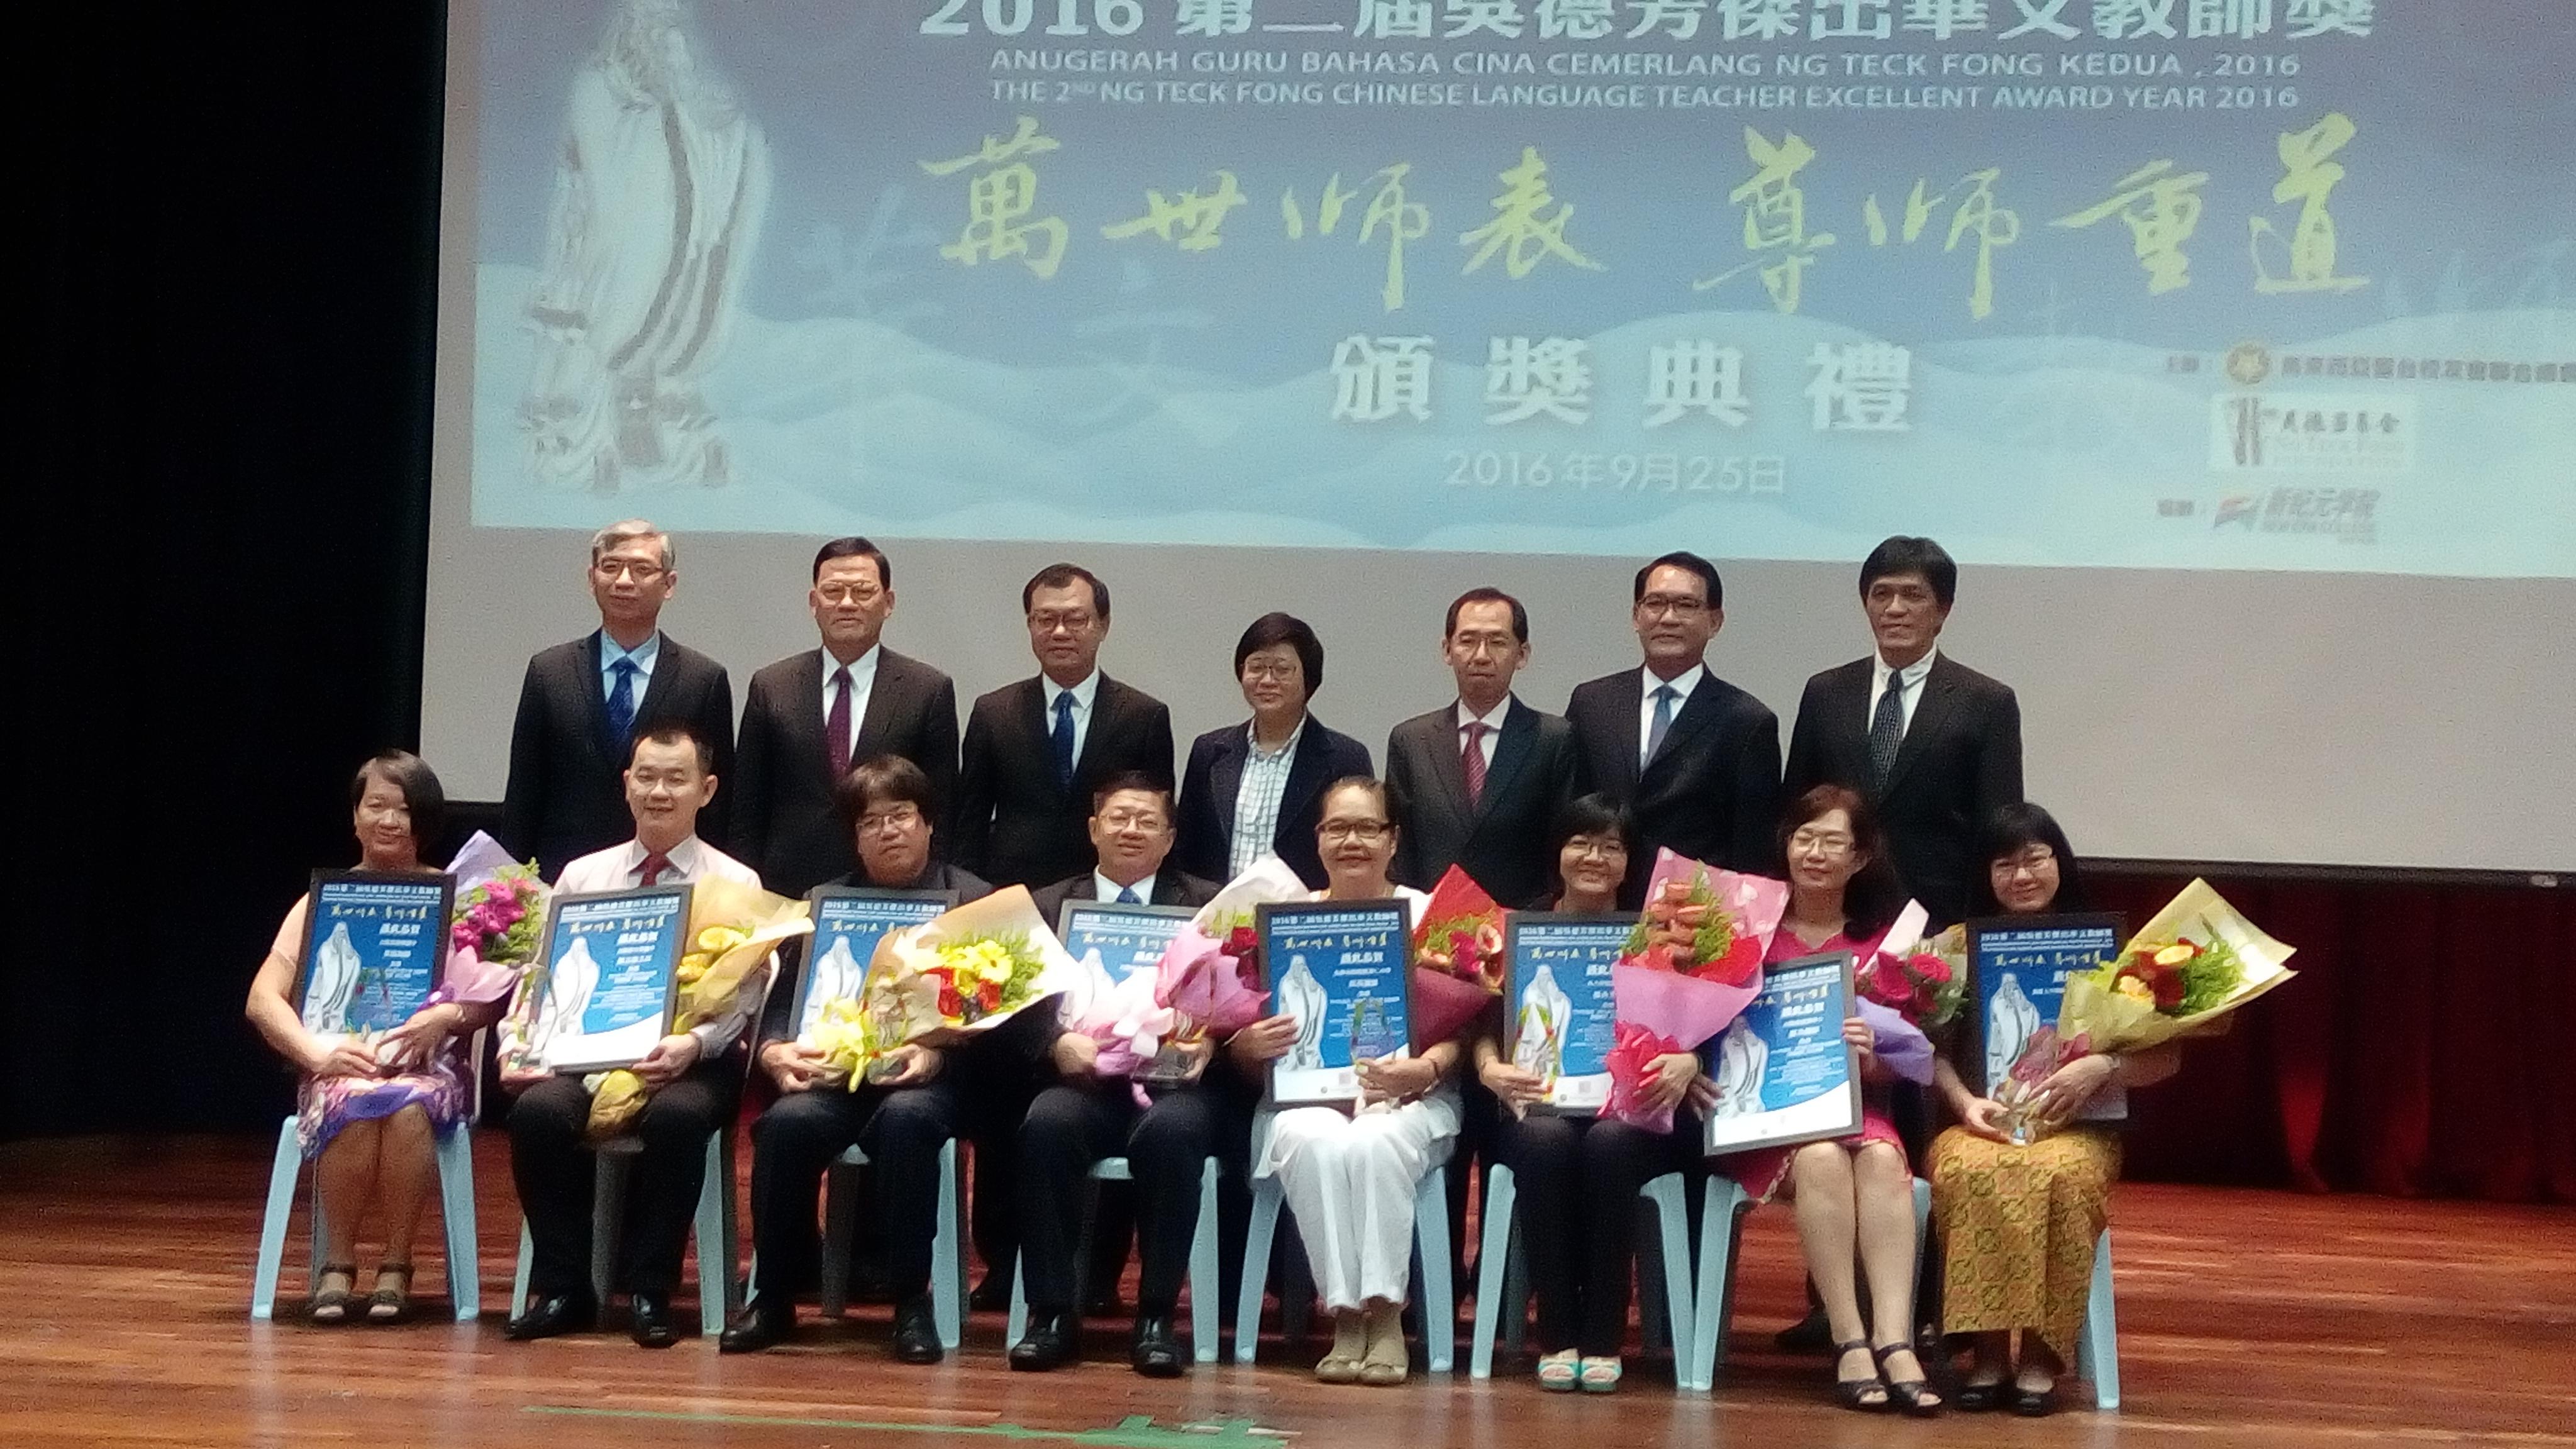 駐馬來西亞代表處章計平大使(後排左2)出席「2016年第二屆吳德芳傑出華文教師獎」頒獎典禮，和馬國婦女、家庭及社會發展部周副部長美芬(後排中)及與會貴賓，以及得獎之傑出教師與傑出行政人員合影留念。